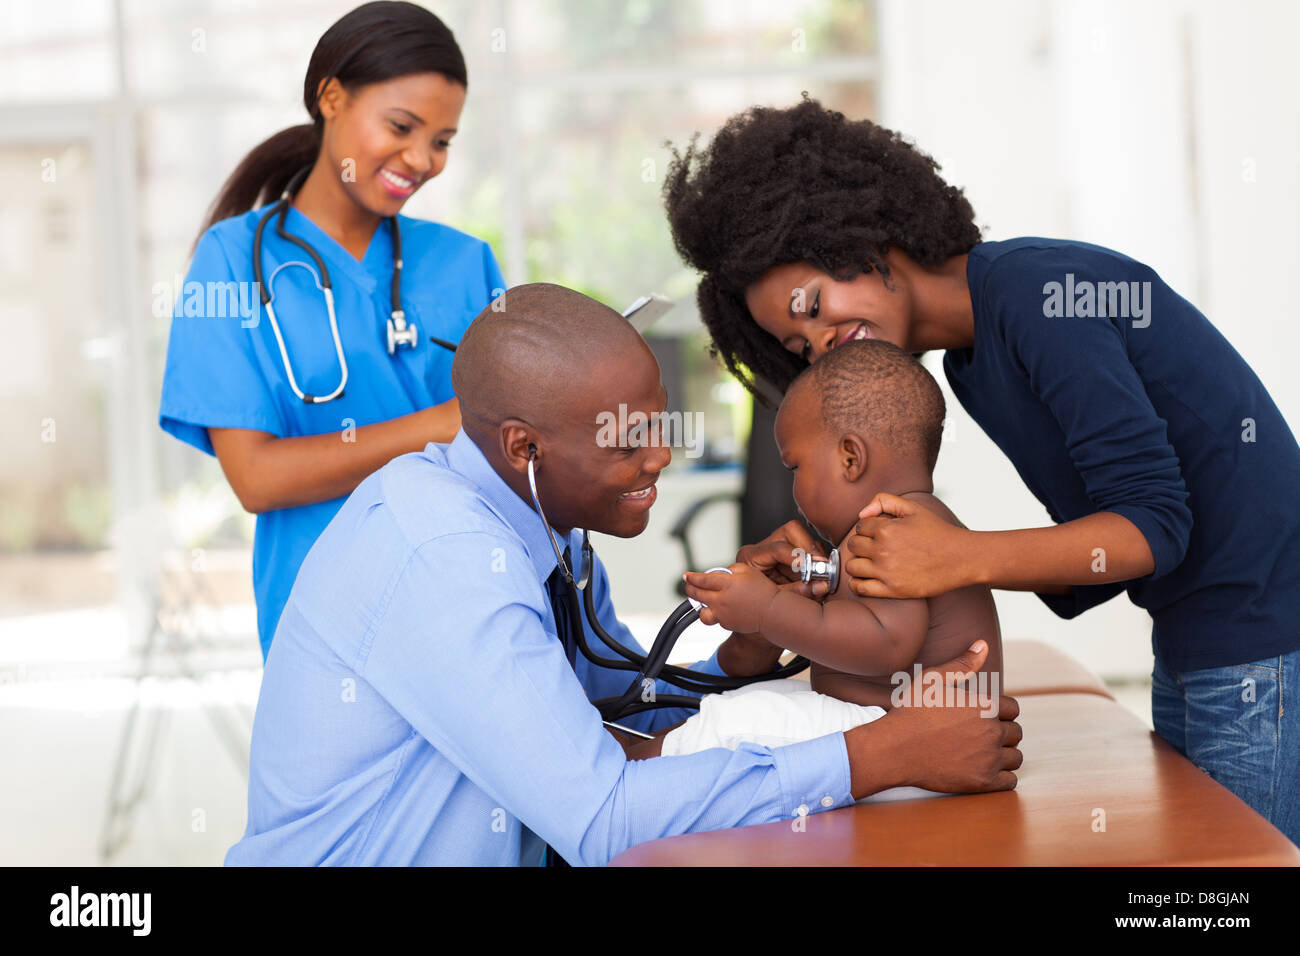 Allegro madre africana e suo figlio nell'ufficio del medico con connettore maschio di tipo medico e infermiere femmina Foto Stock